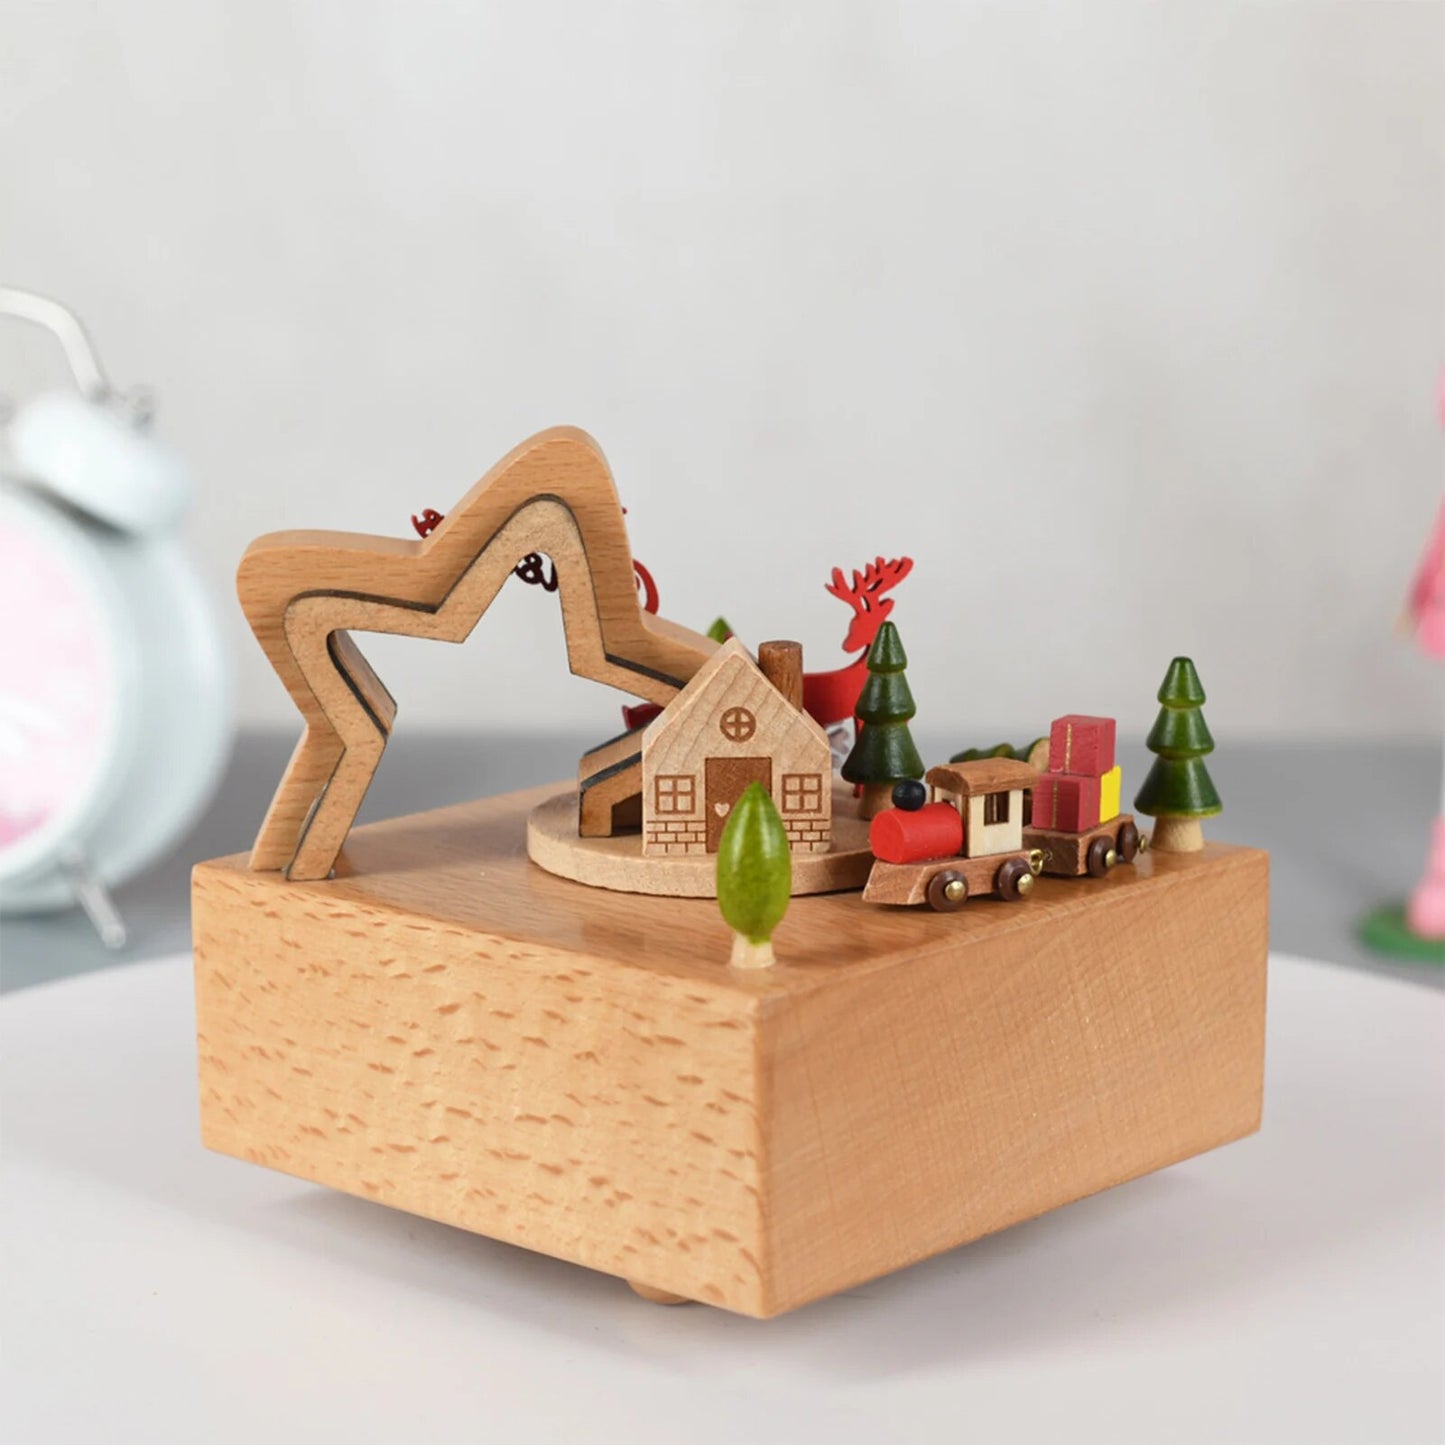 Karussell Spieluhr Holz Weihnachten Ornament Dreh Zug Spieluhr Hause Dekoration Zubehör Für Geburtstag Geschenke Valentinstag 